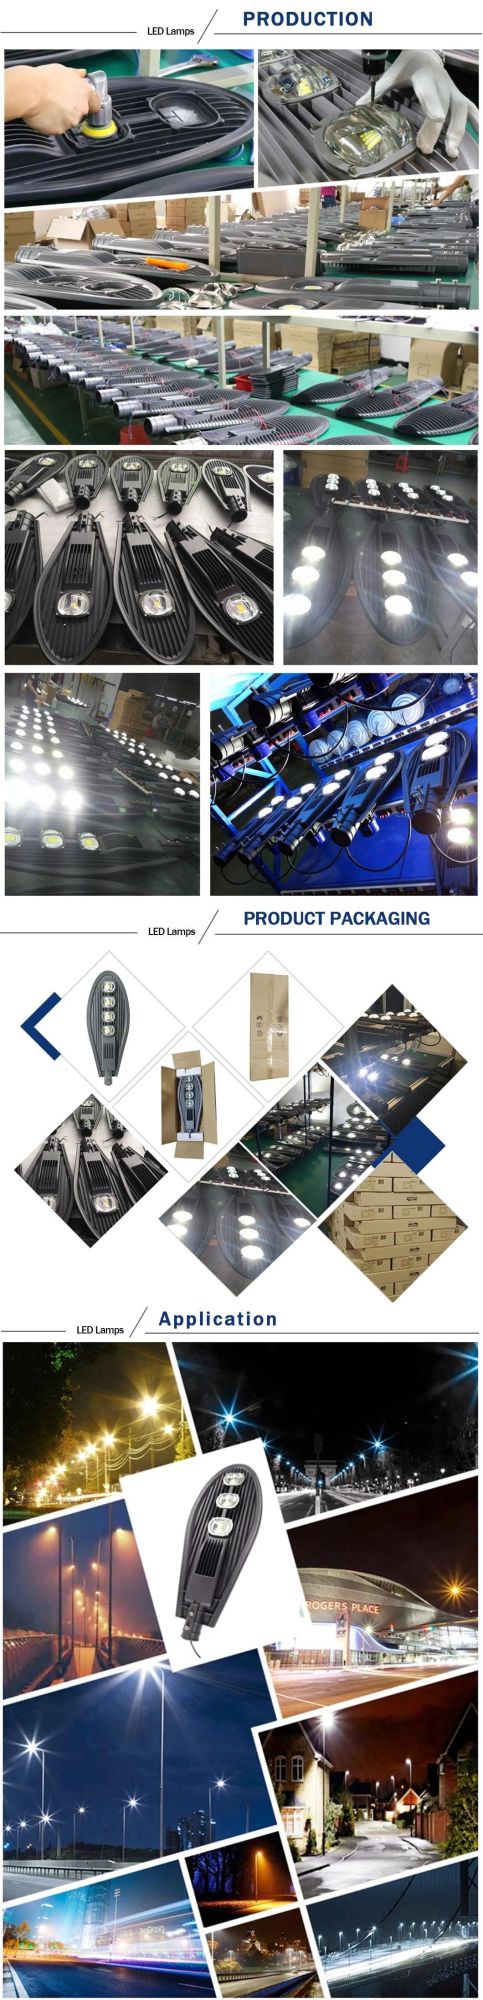 Factory Price Outdoor Waterproof IP65 30W 50W 60W LED Street Light